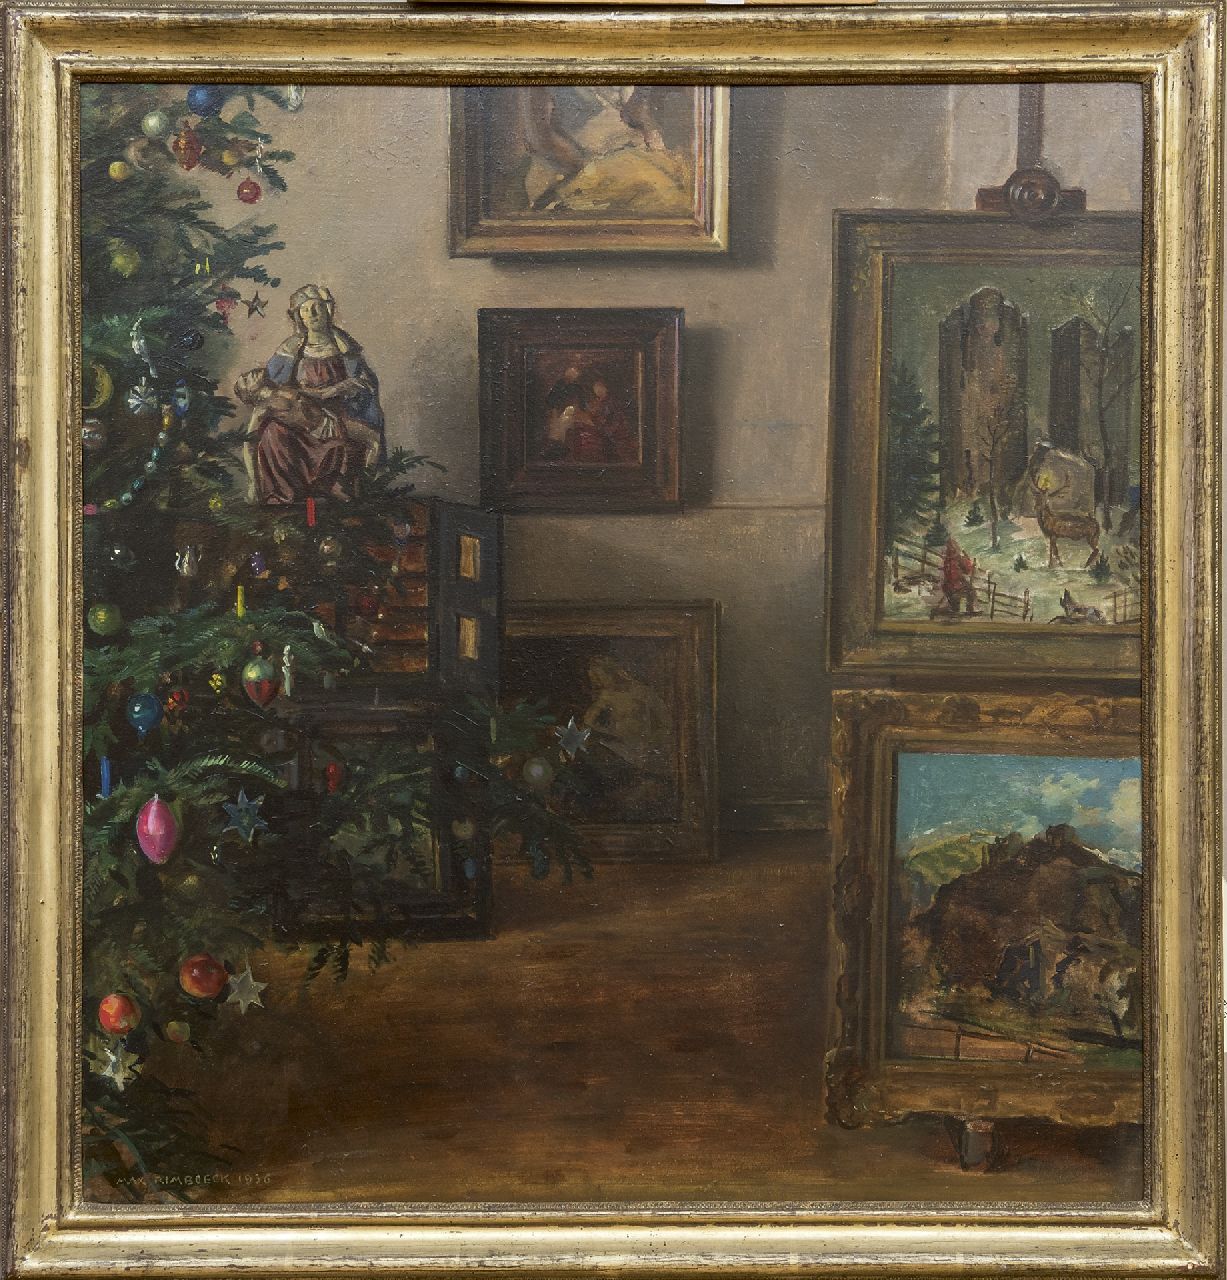 Rimböck M.  | Max Rimböck | Schilderijen te koop aangeboden | Kerstinterieur, olieverf op asbest 61,3 x 58,3 cm, gesigneerd linksonder en gedateerd 1936